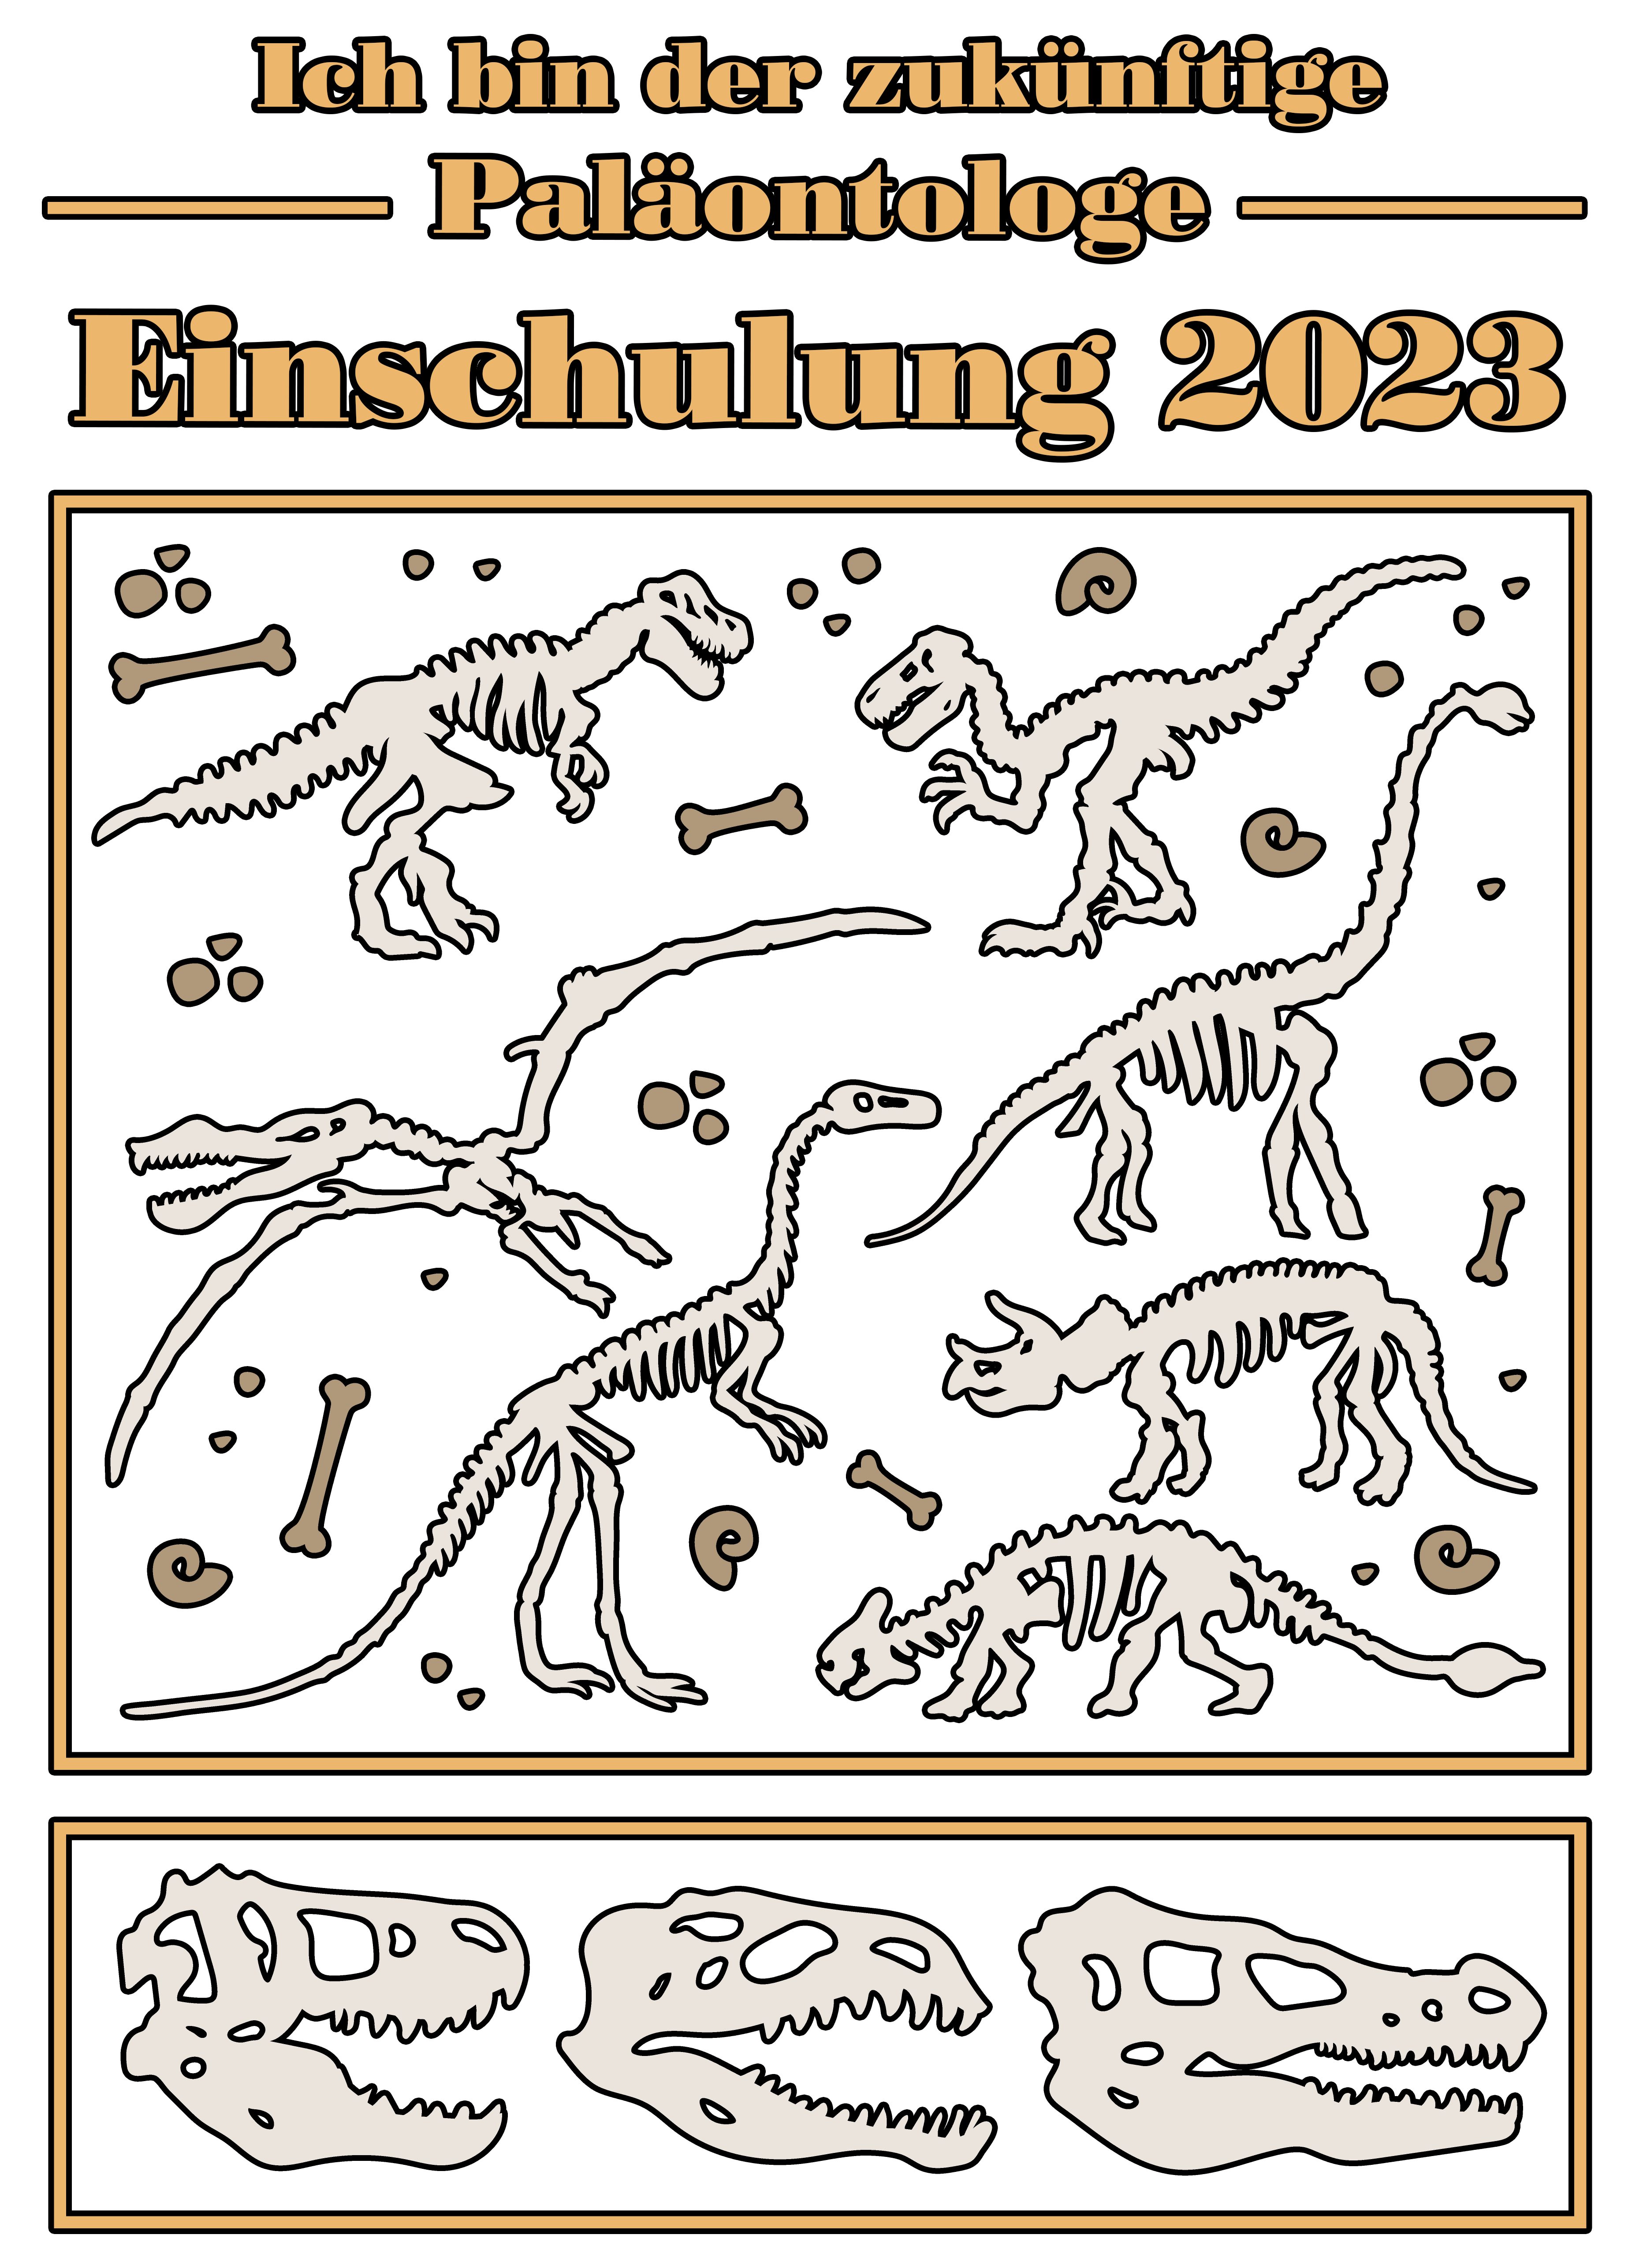 MyDesign24 Print-Shirt rot, bedrucktes Kinder Dino Einschulung T-Shirt 2023, i36 blau, Paläontologe mit Baumwollshirt schwarz, Skeletten weiß, zukünftige